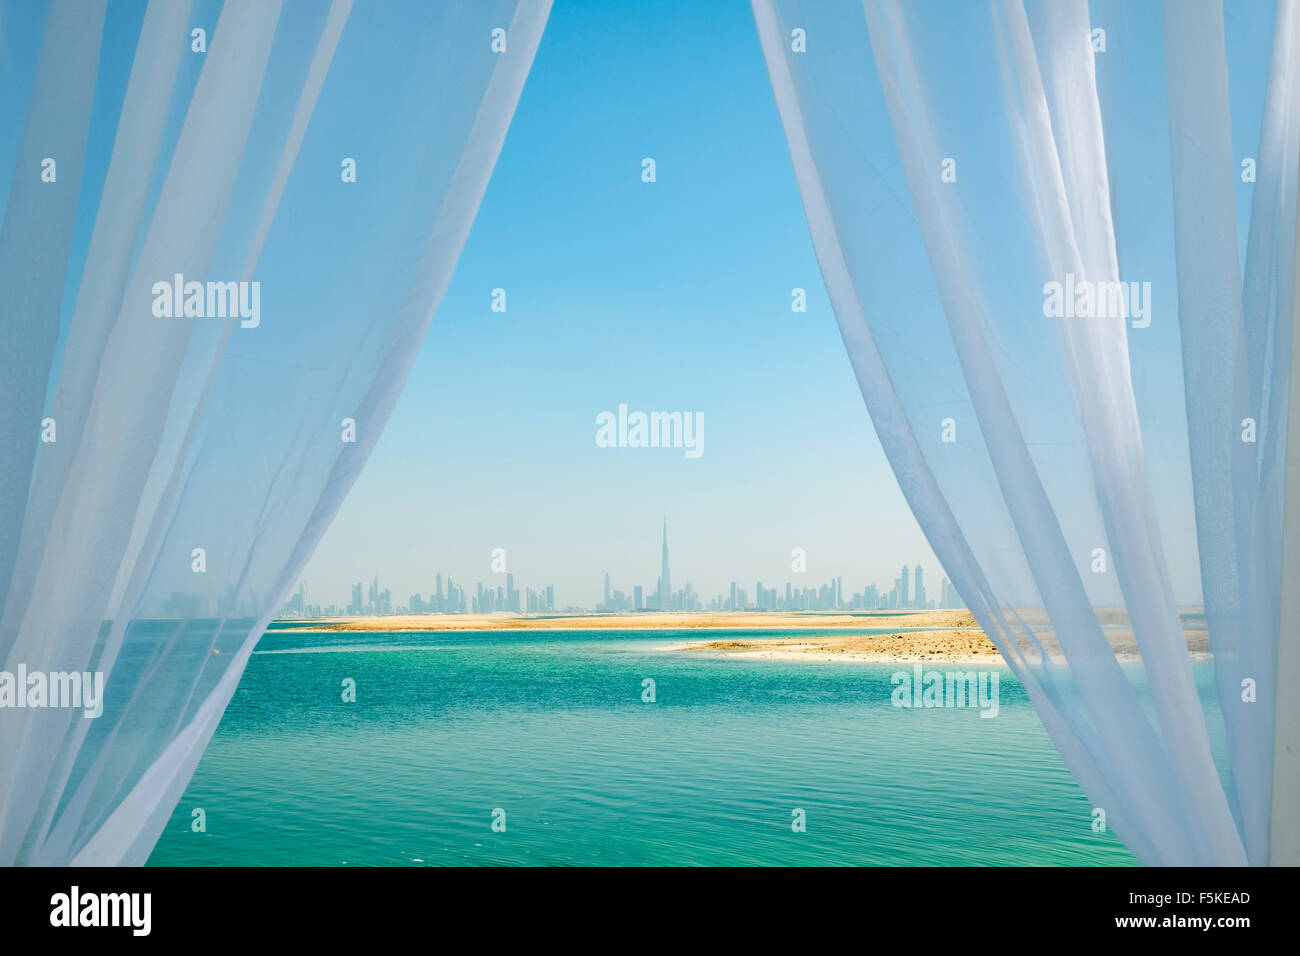 Skyline de l'île de Dubaï Liban beach resort sur l'île, un homme fait partie du monde au large de Dubaï, Émirats Arabes Unis Banque D'Images